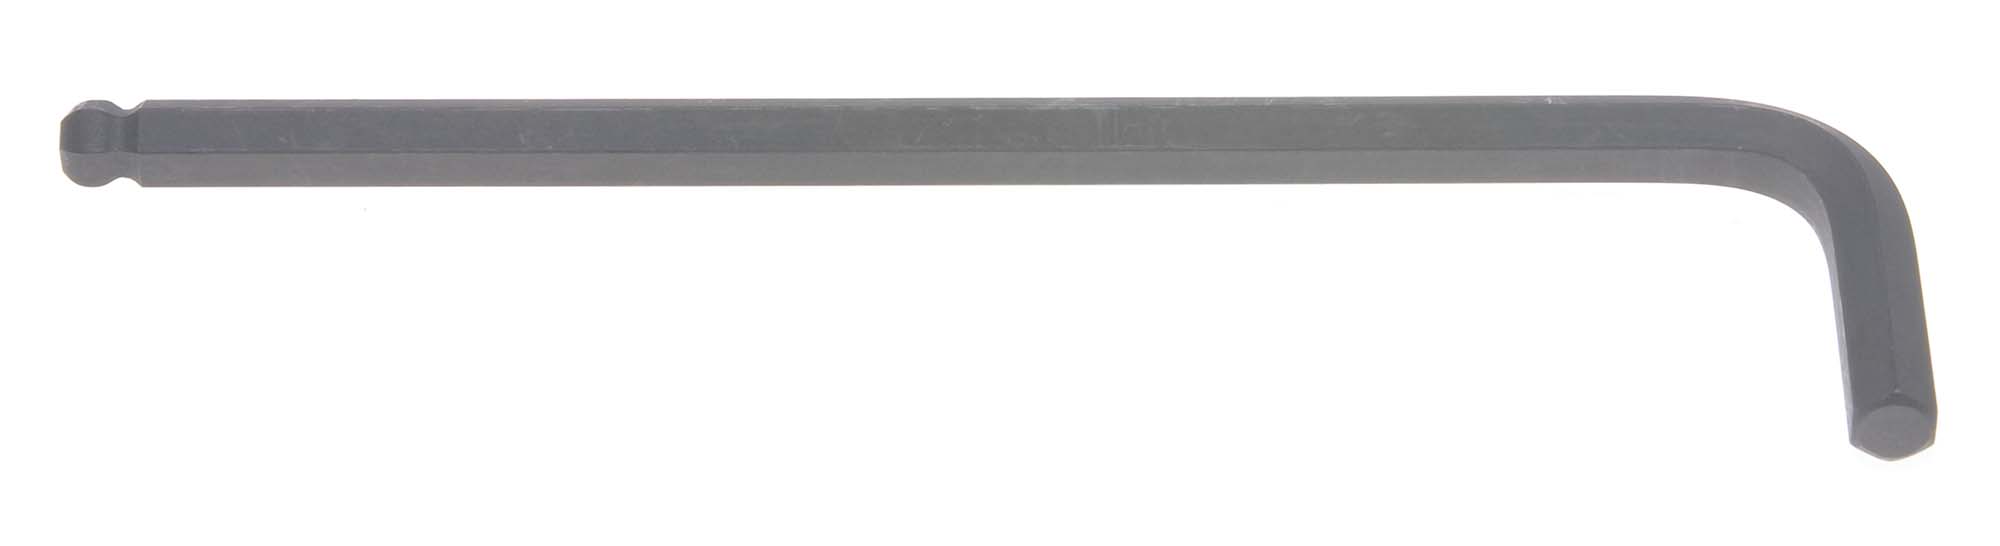 10mm Bondhus Balldriver L-Wrench Hex Key